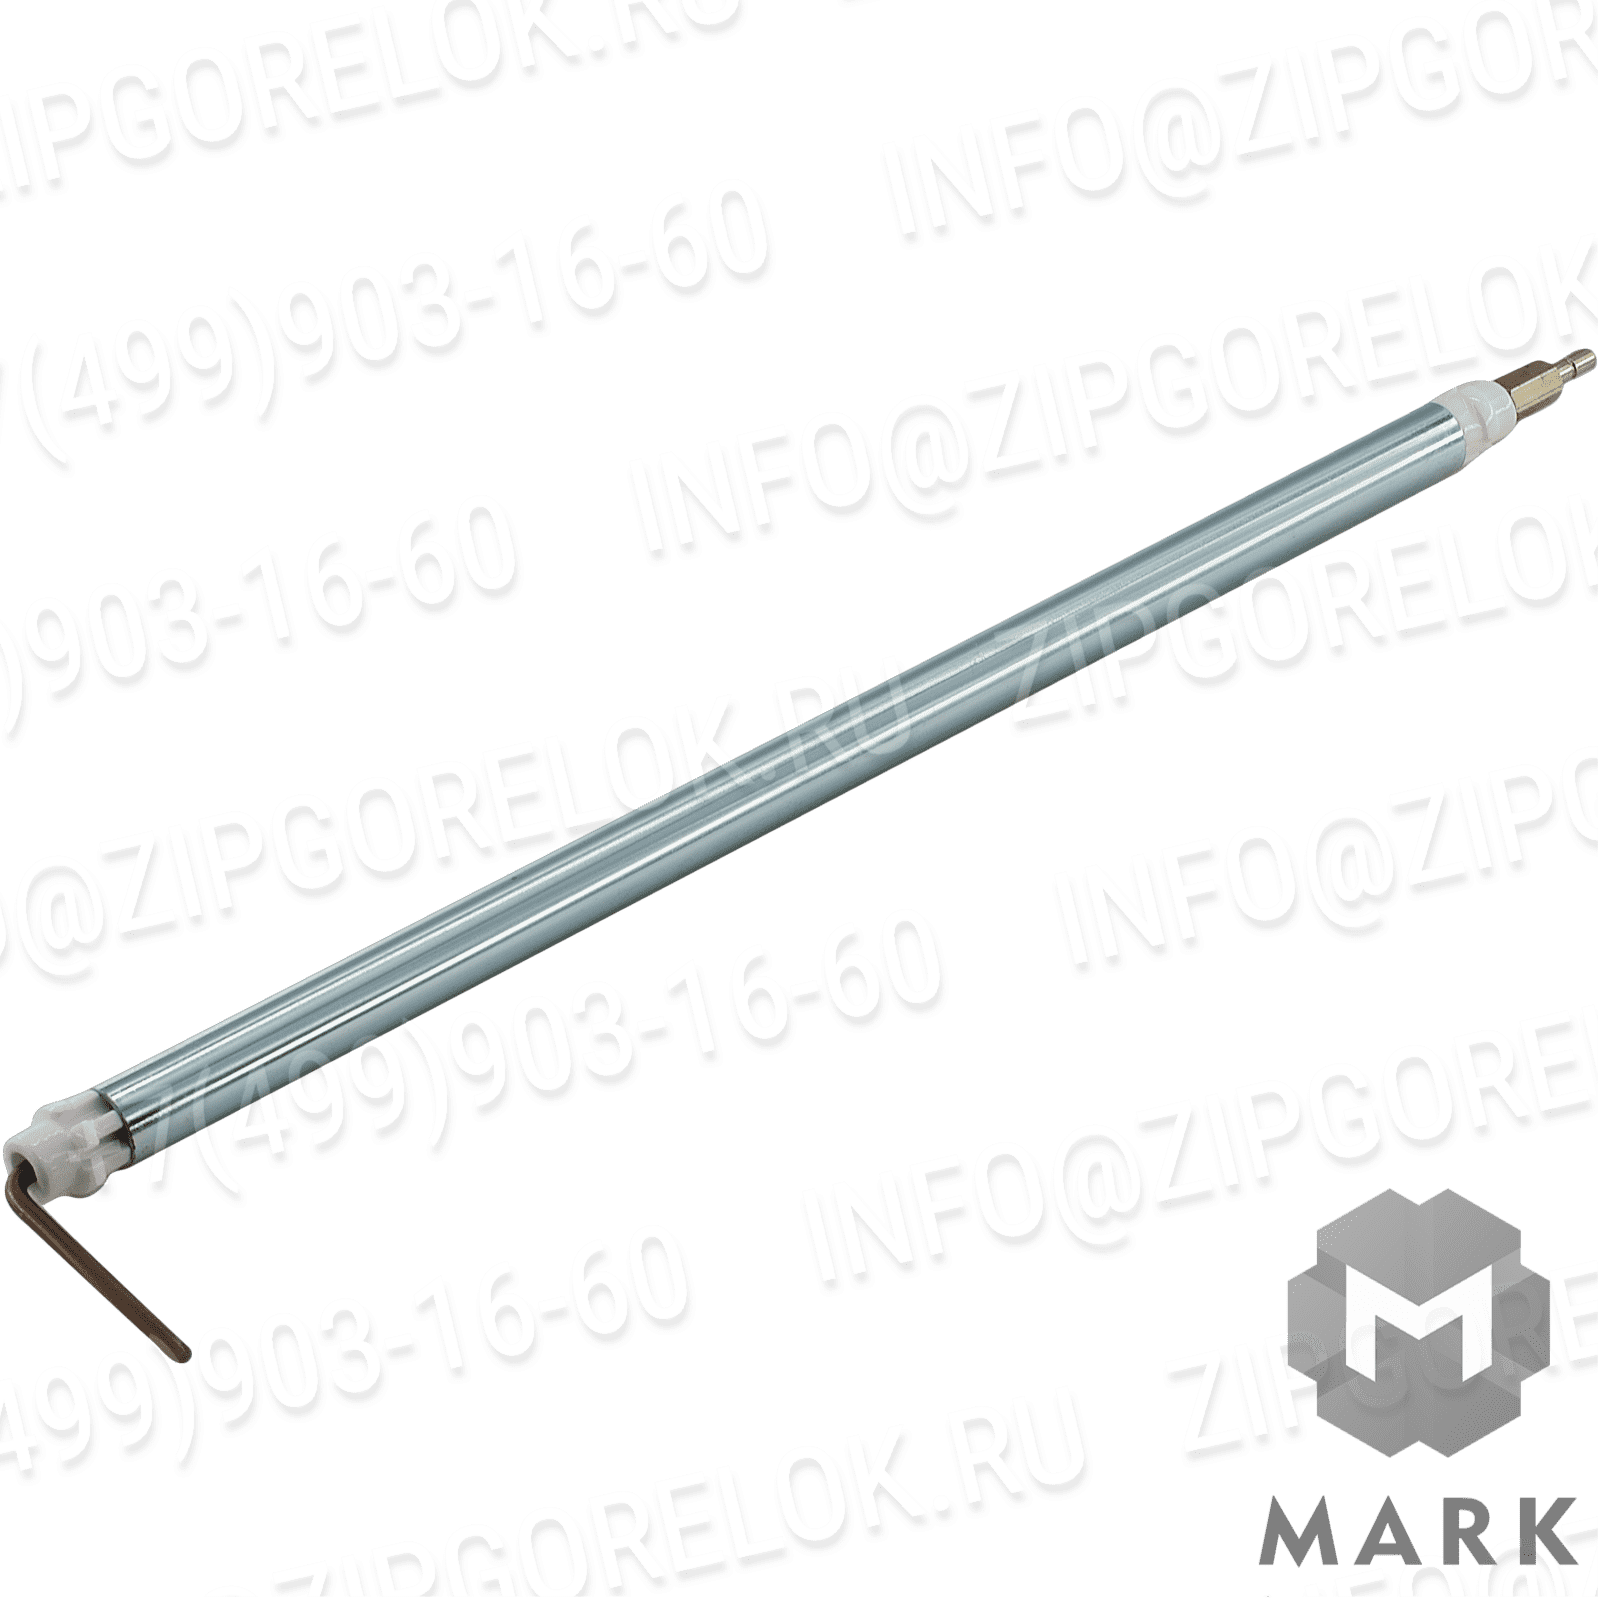 3012174 Купить 37828 Шкаф электрический Baltur | Zipgorelok.ru